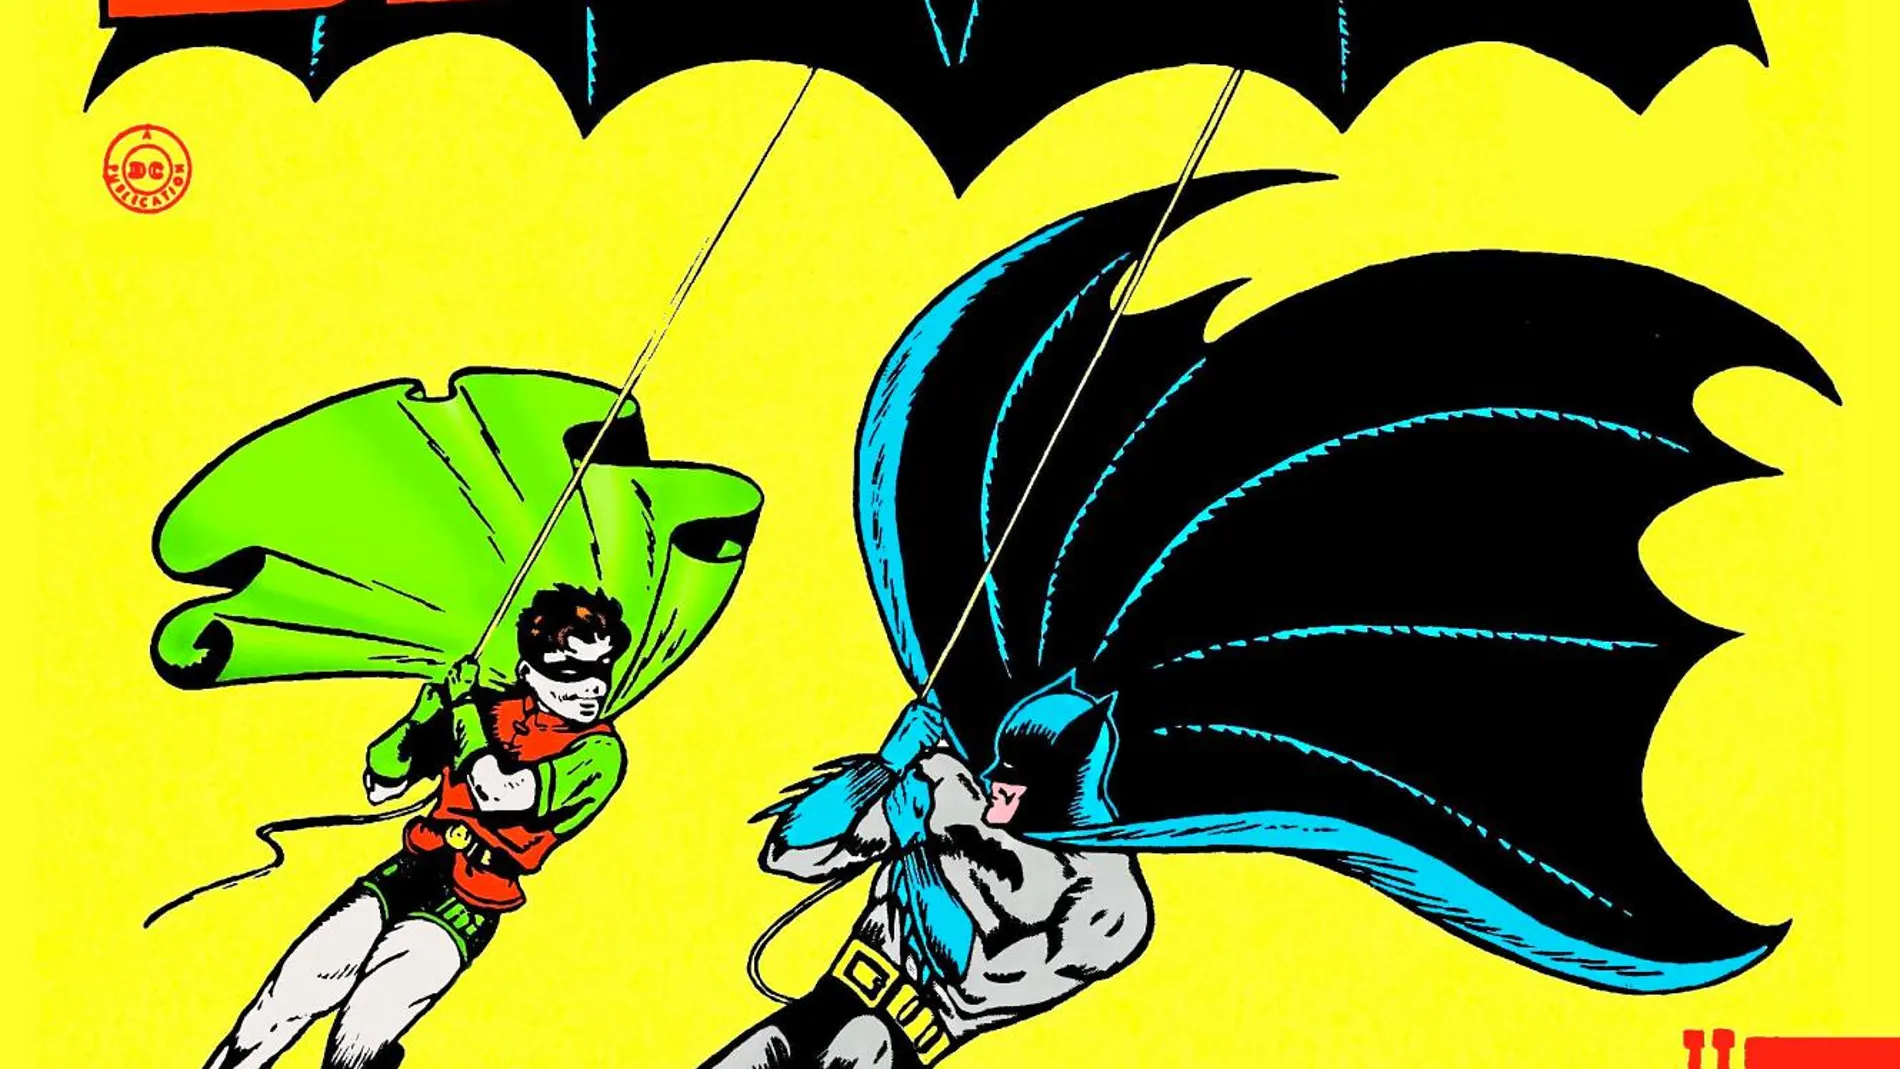 Batman y Robin aparecieron por primera vez en 1940, gracias a la iniciativa de DC comics de ordenar a Bob Kane la creación de un personaje que alcanzase la fama de Superman